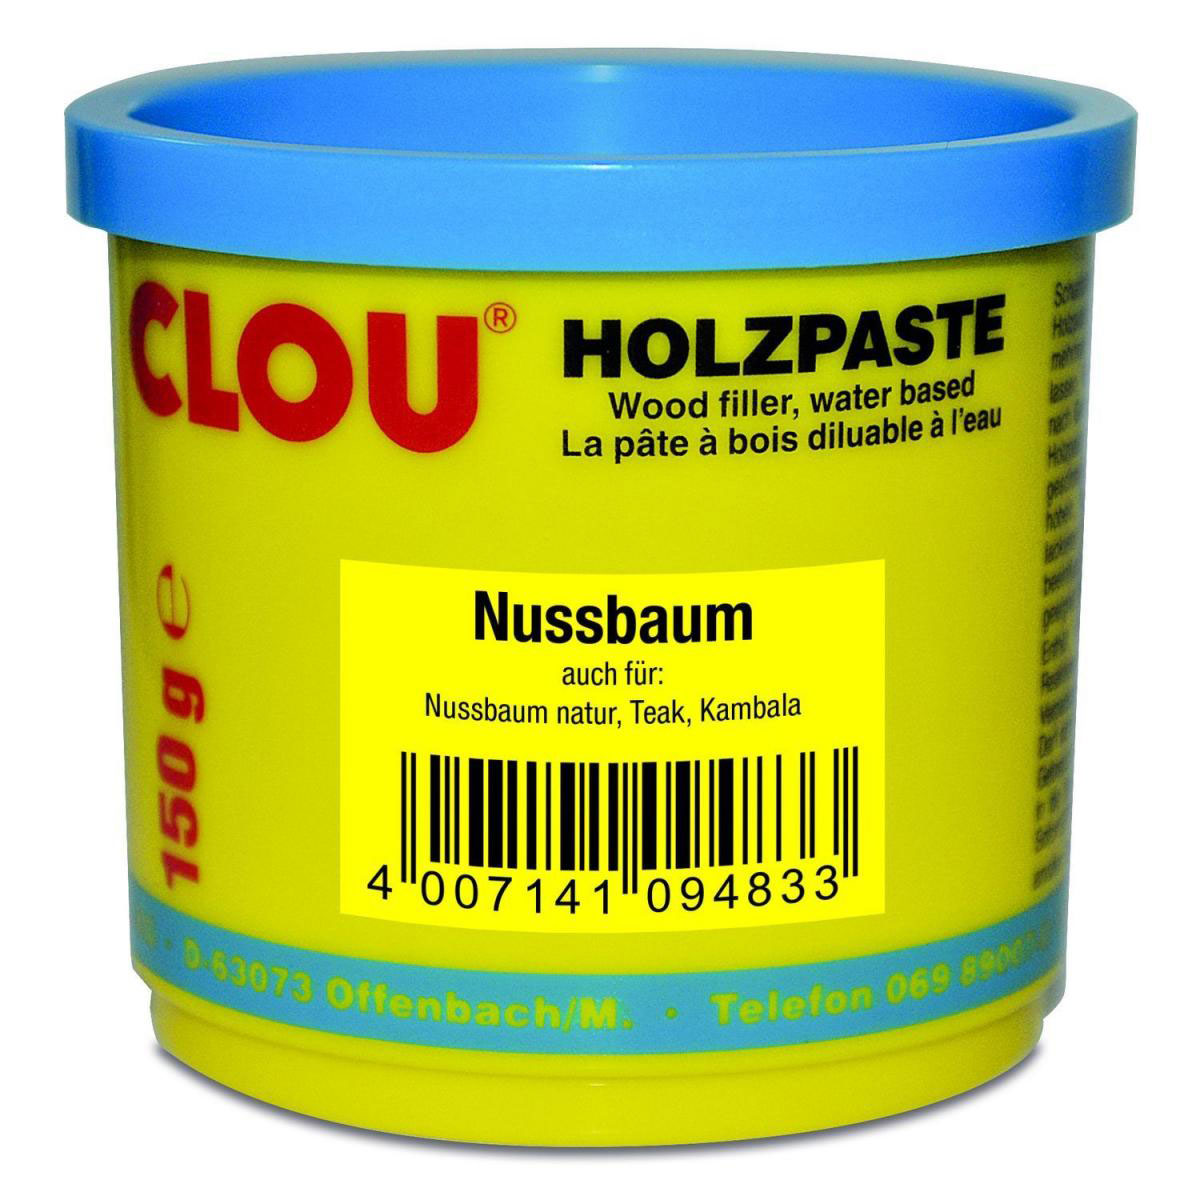 Clou Holzpaste 150 g, Nussbaum